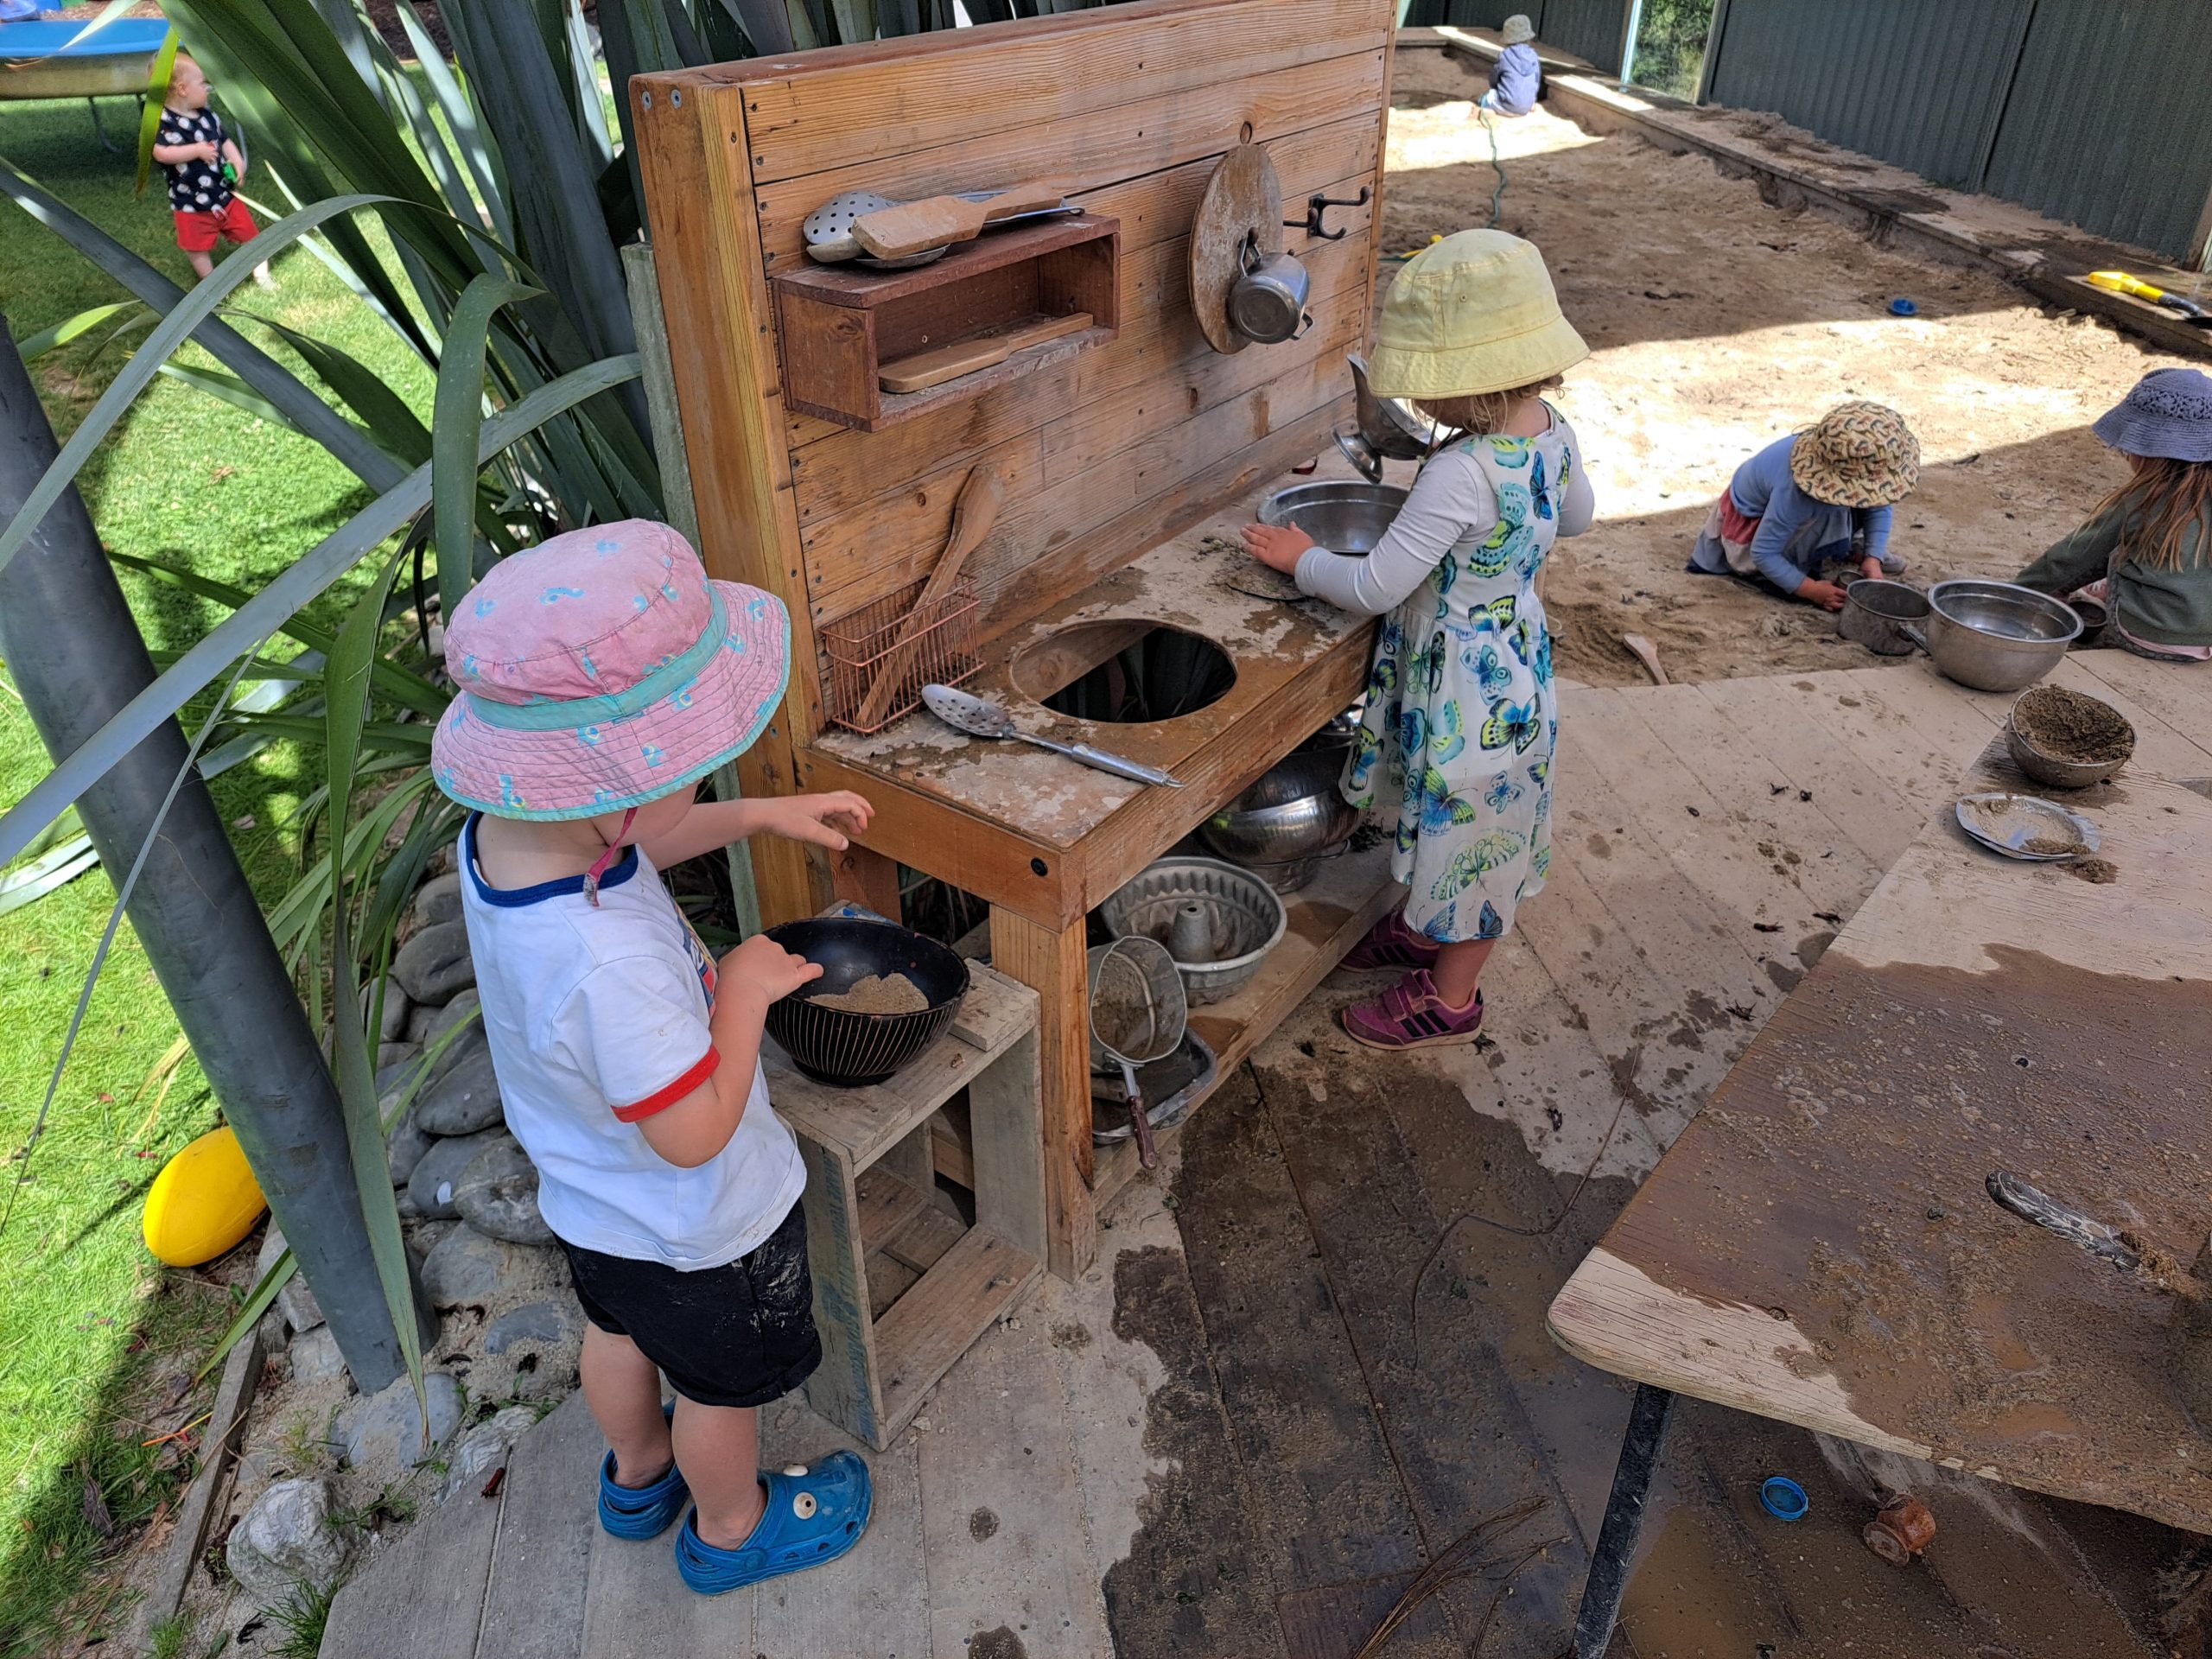 Mud kitchen in action